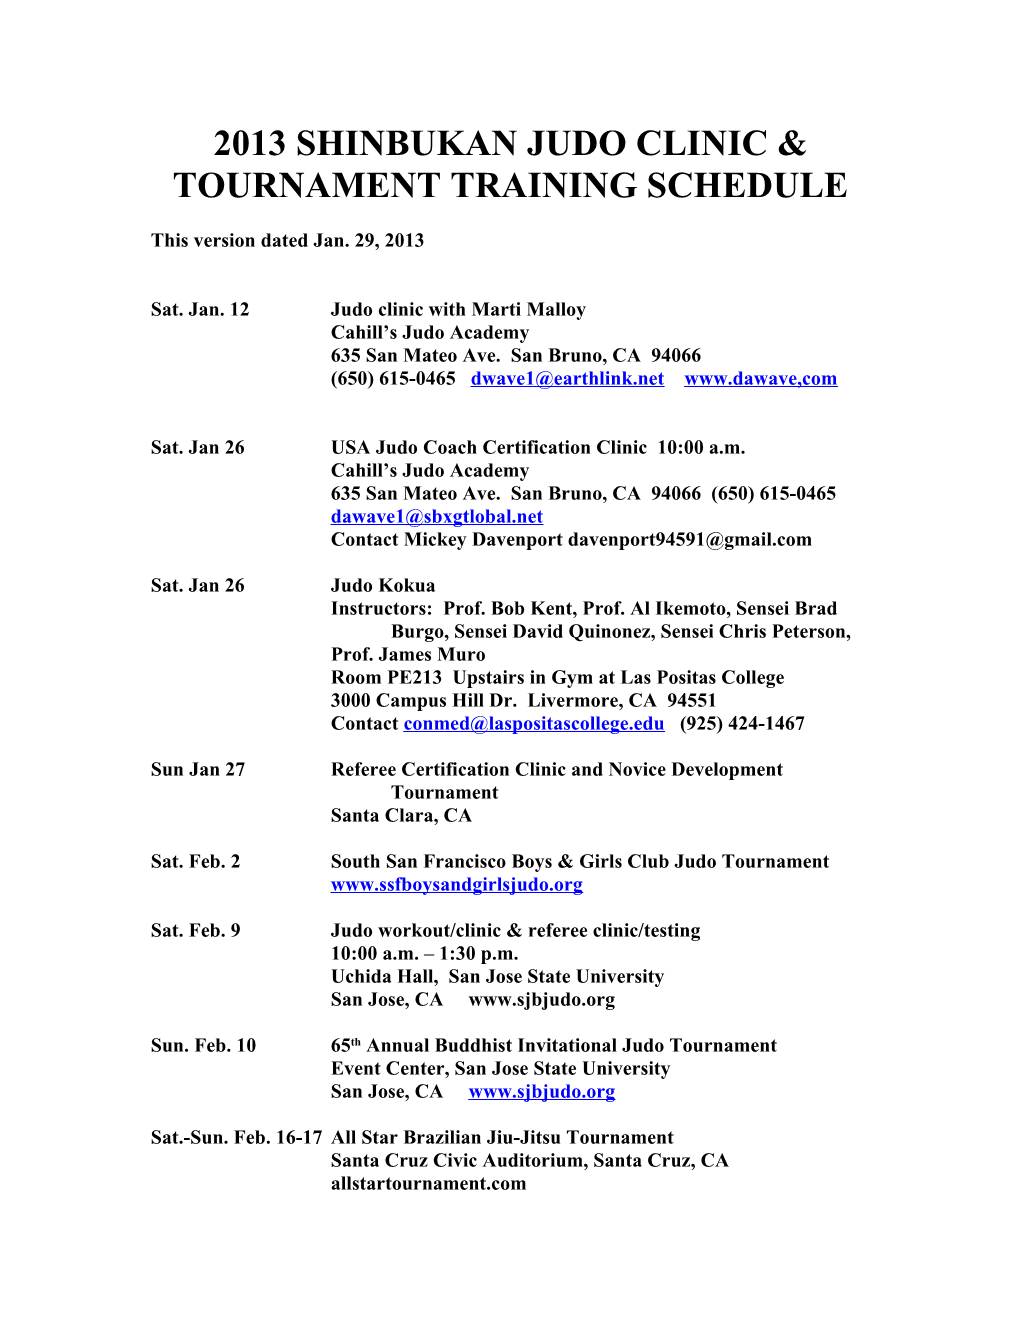 2011 Shinbukan Training Schedule